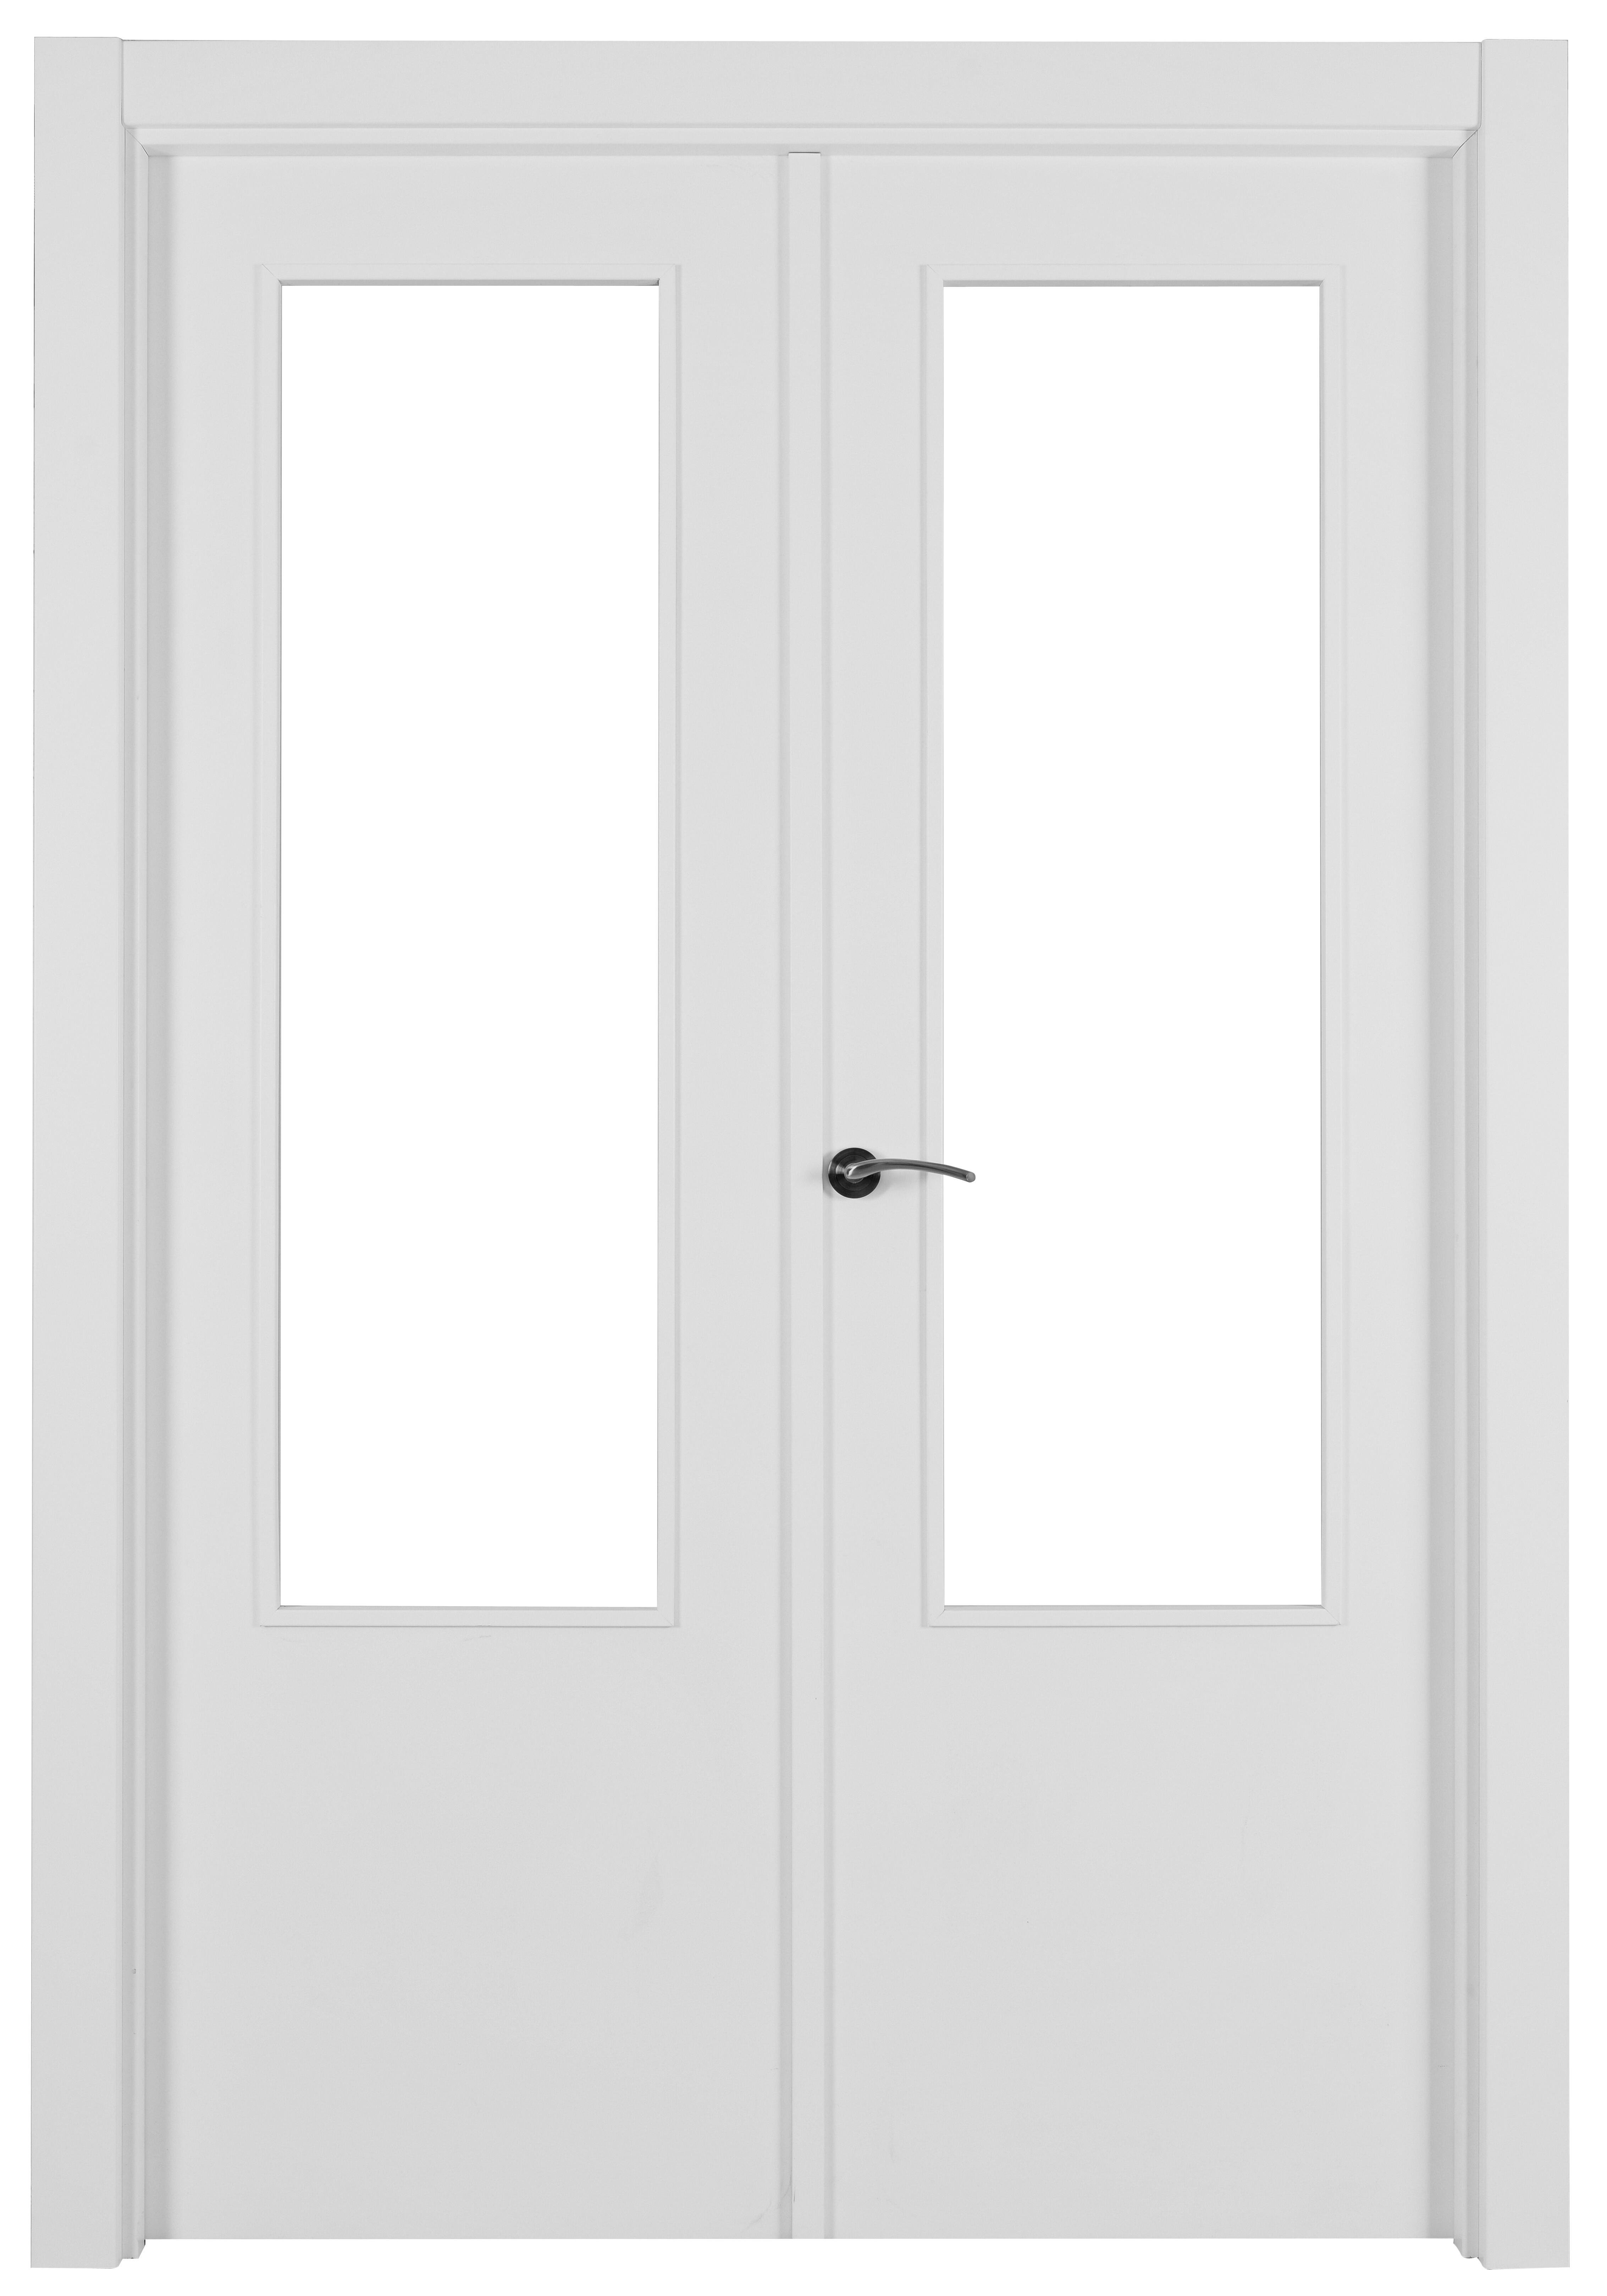 Puerta abatible lyon blanca aero blanco derecha con cristal de 110x30 y 105cm